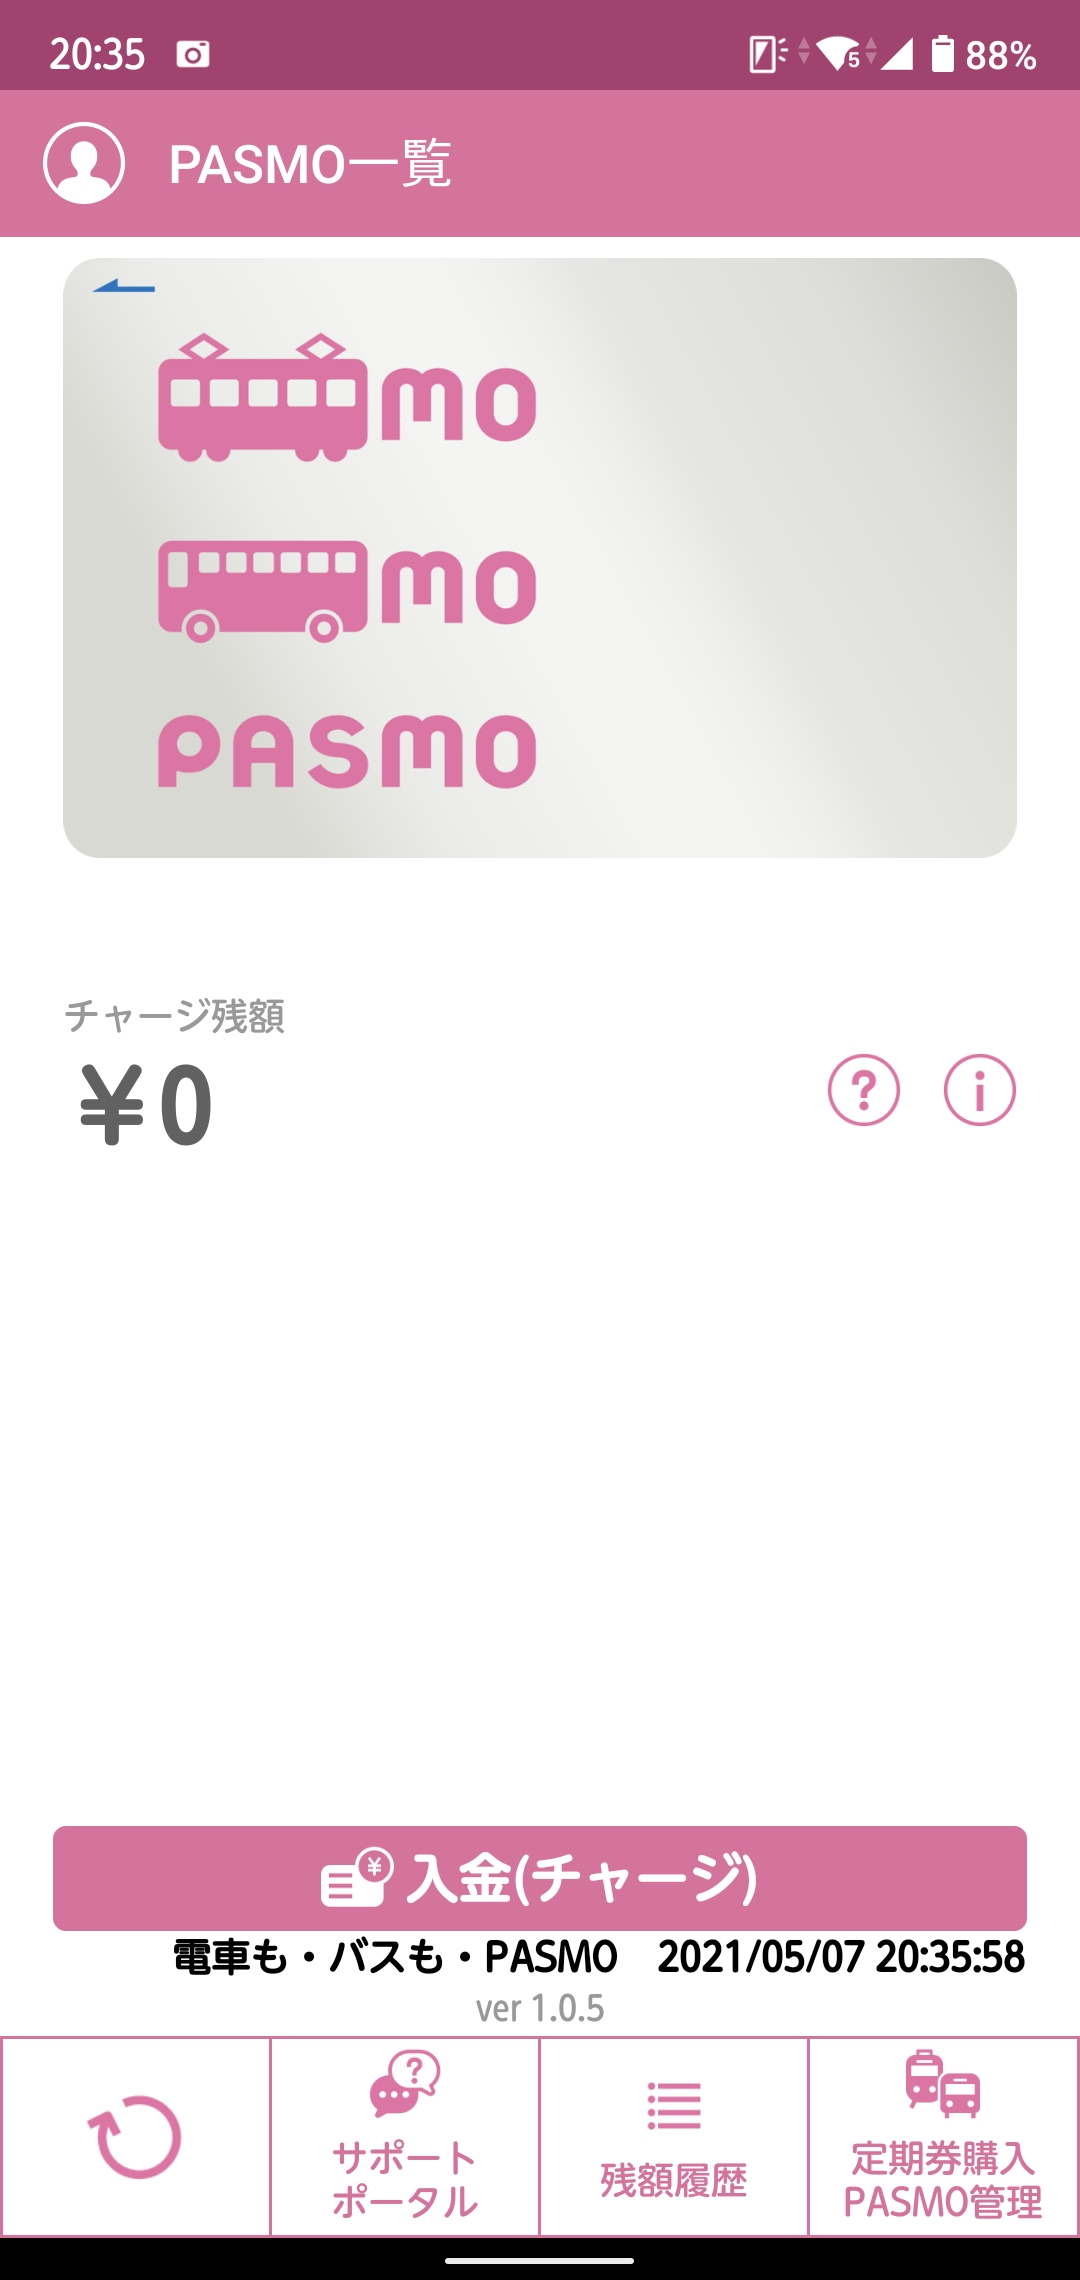 手机PASMO，相比西瓜最大的好处就是支持JR以外的铁路公司的定期票，意味着东京23区以外的上班族或者学生也可以用手机定期票了